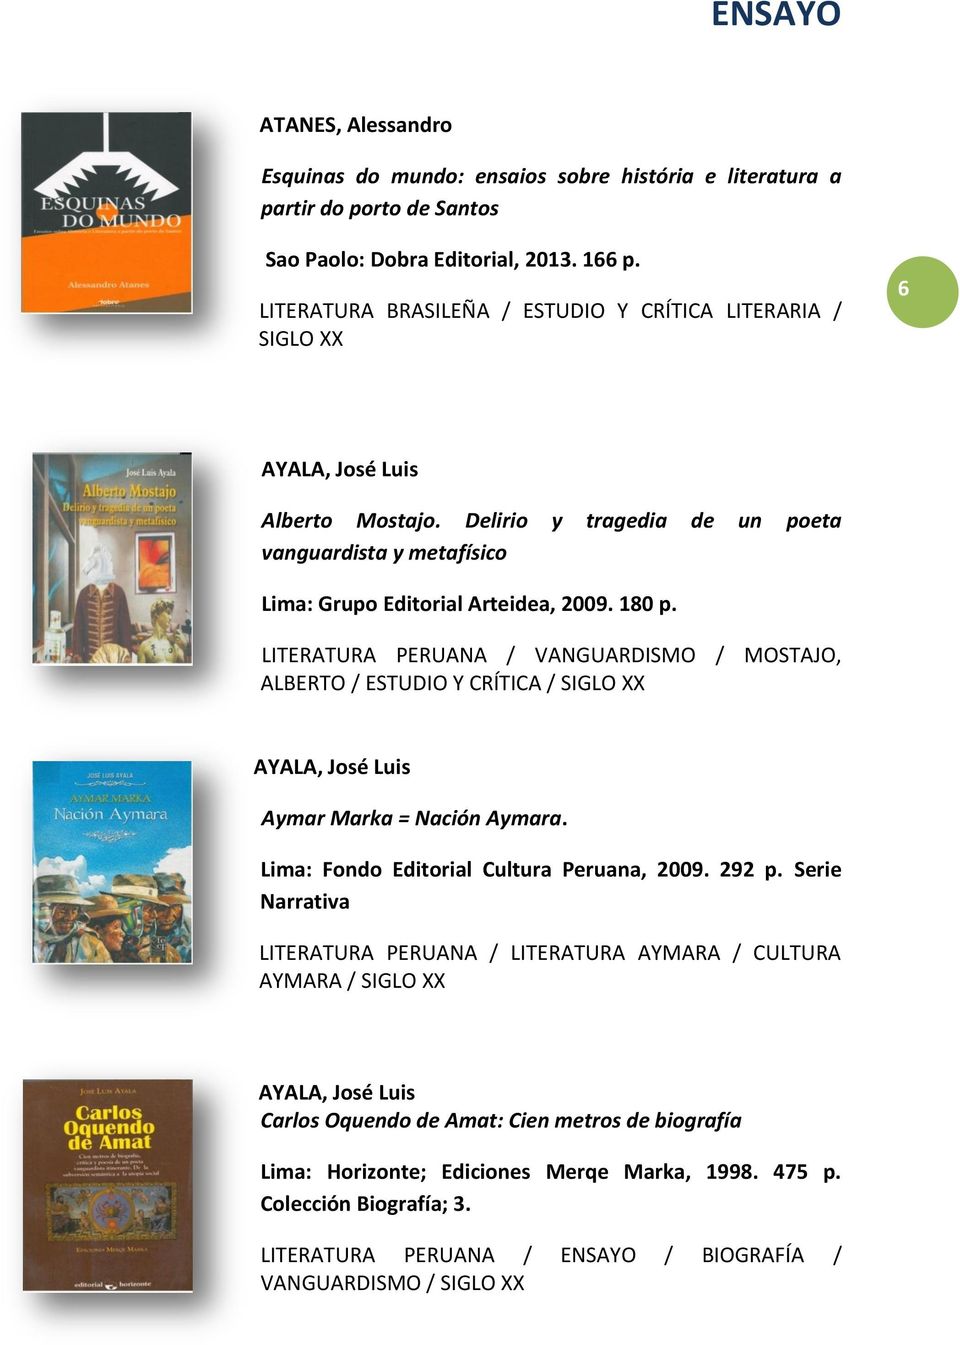 LITERATURA PERUANA / VANGUARDISMO / MOSTAJO, ALBERTO / ESTUDIO Y CRÍTICA / SIGLO XX Aymar Marka = Nación Aymara. Lima: Fondo Editorial Cultura Peruana, 2009. 292 p.